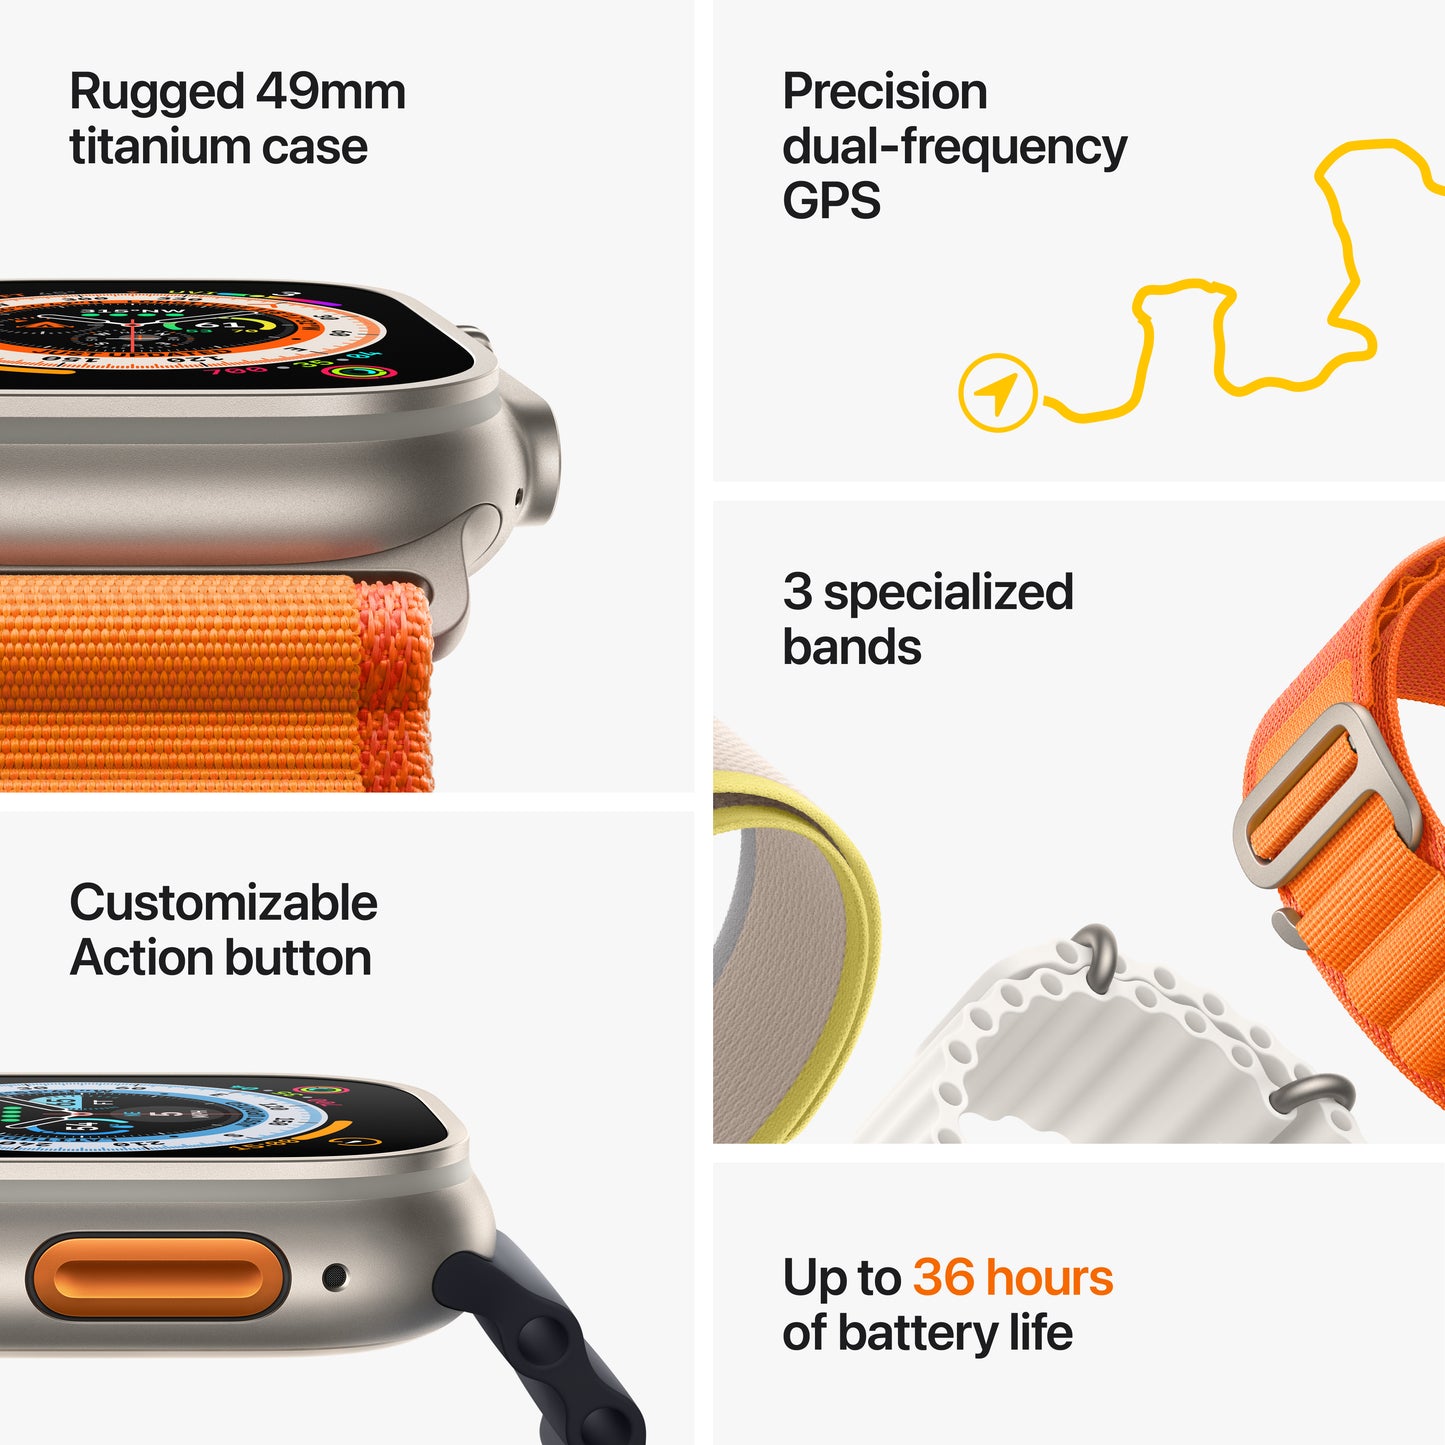 Apple Watch Ultra (GPS + Cellular) de 49 mm - Caja de titanio - Correa Loop Alpine naranja